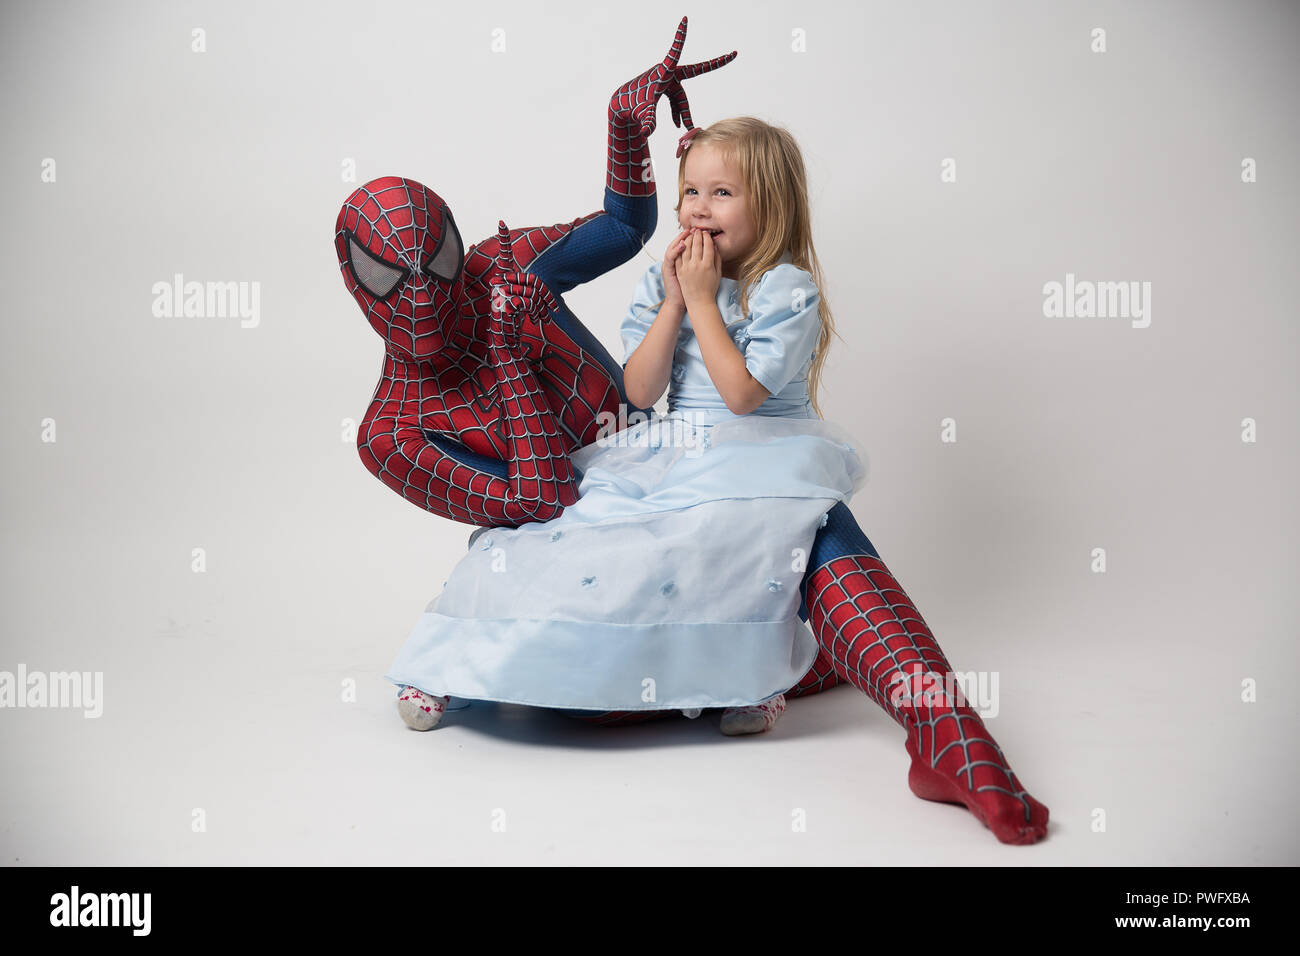 Israël, Tel Aviv, 14 octobre 2018. Le spiderman tient une petite fille dans ses bras. Un homme dans un costume de spiderman sont venus pour féliciter l'enfant pour son anniversaire. Location de costume de Spiderman. Banque D'Images